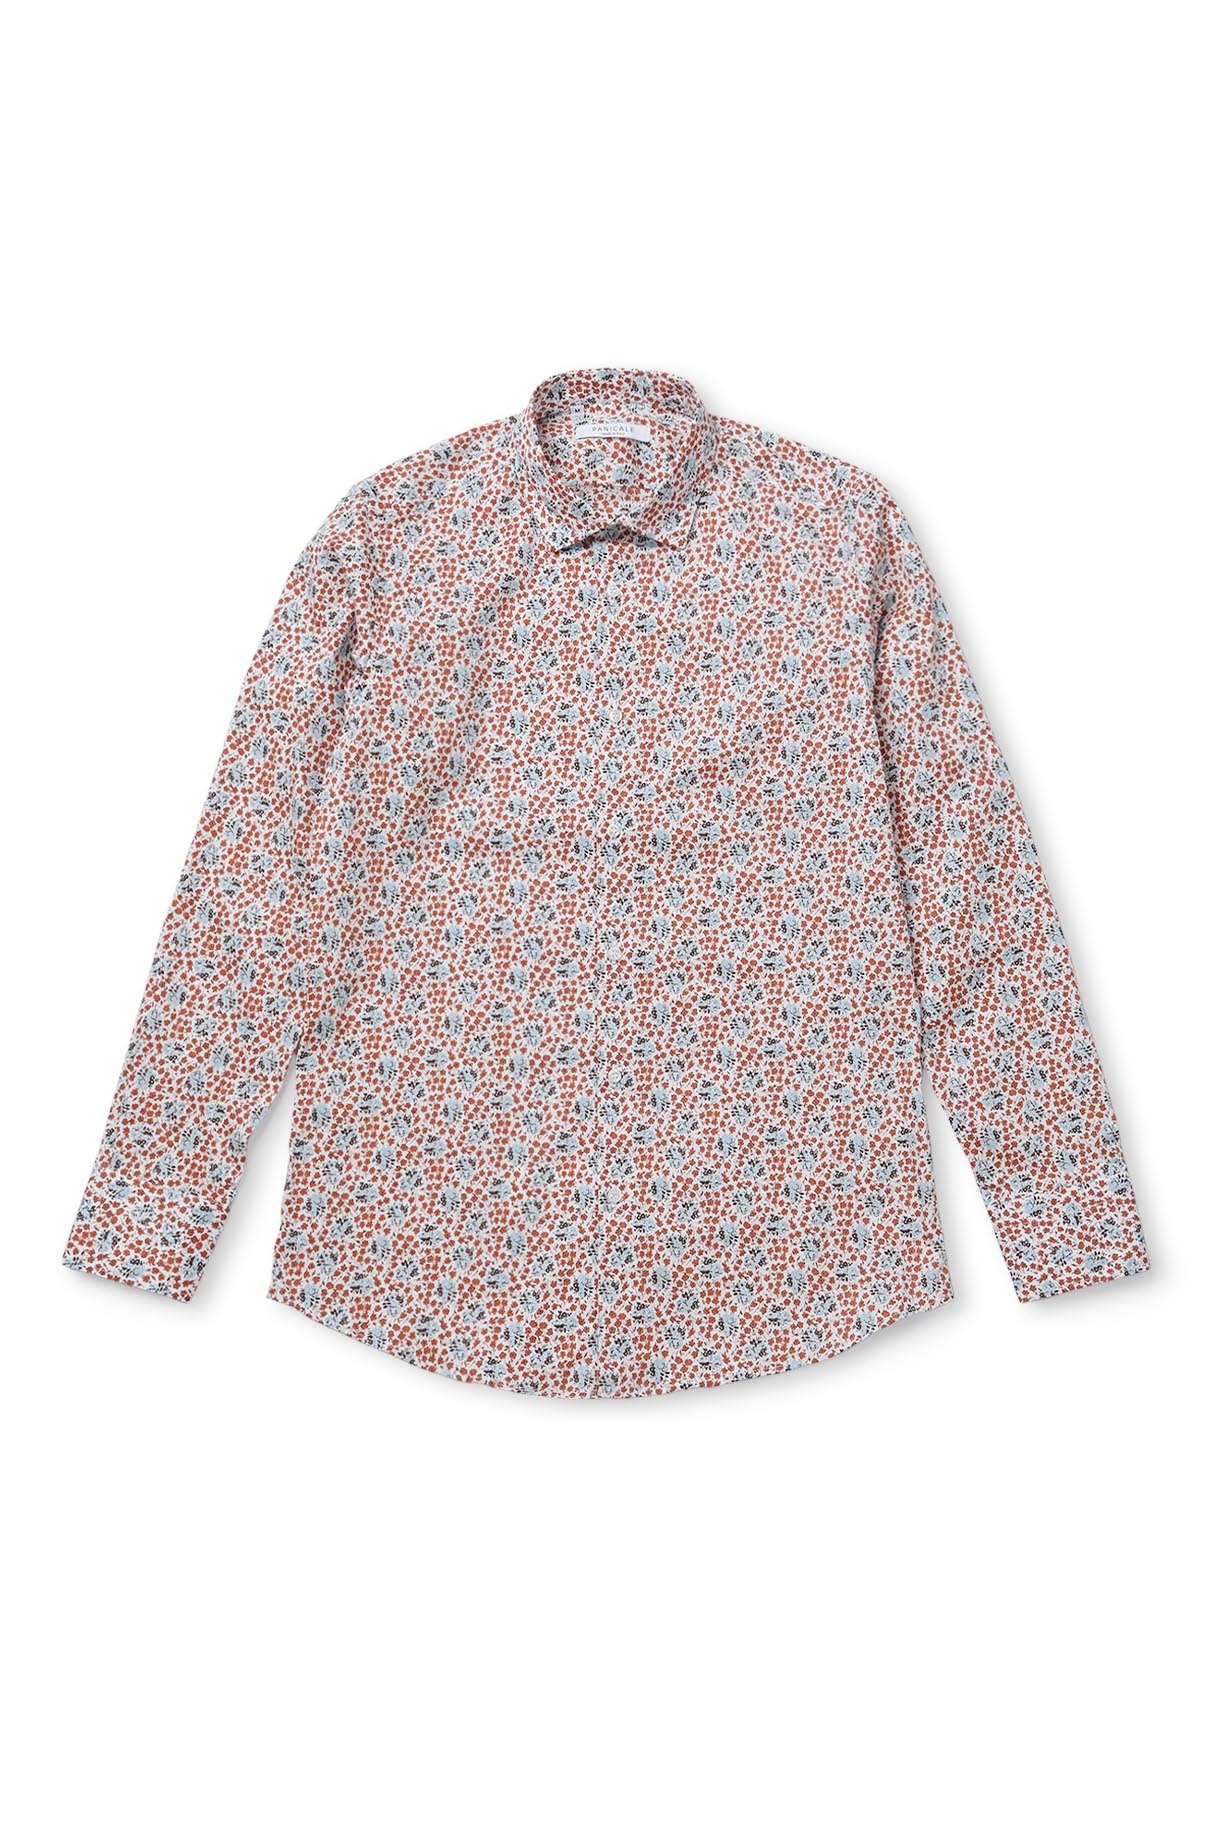 슬림 핏 세미 캐주얼 패턴 셔츠